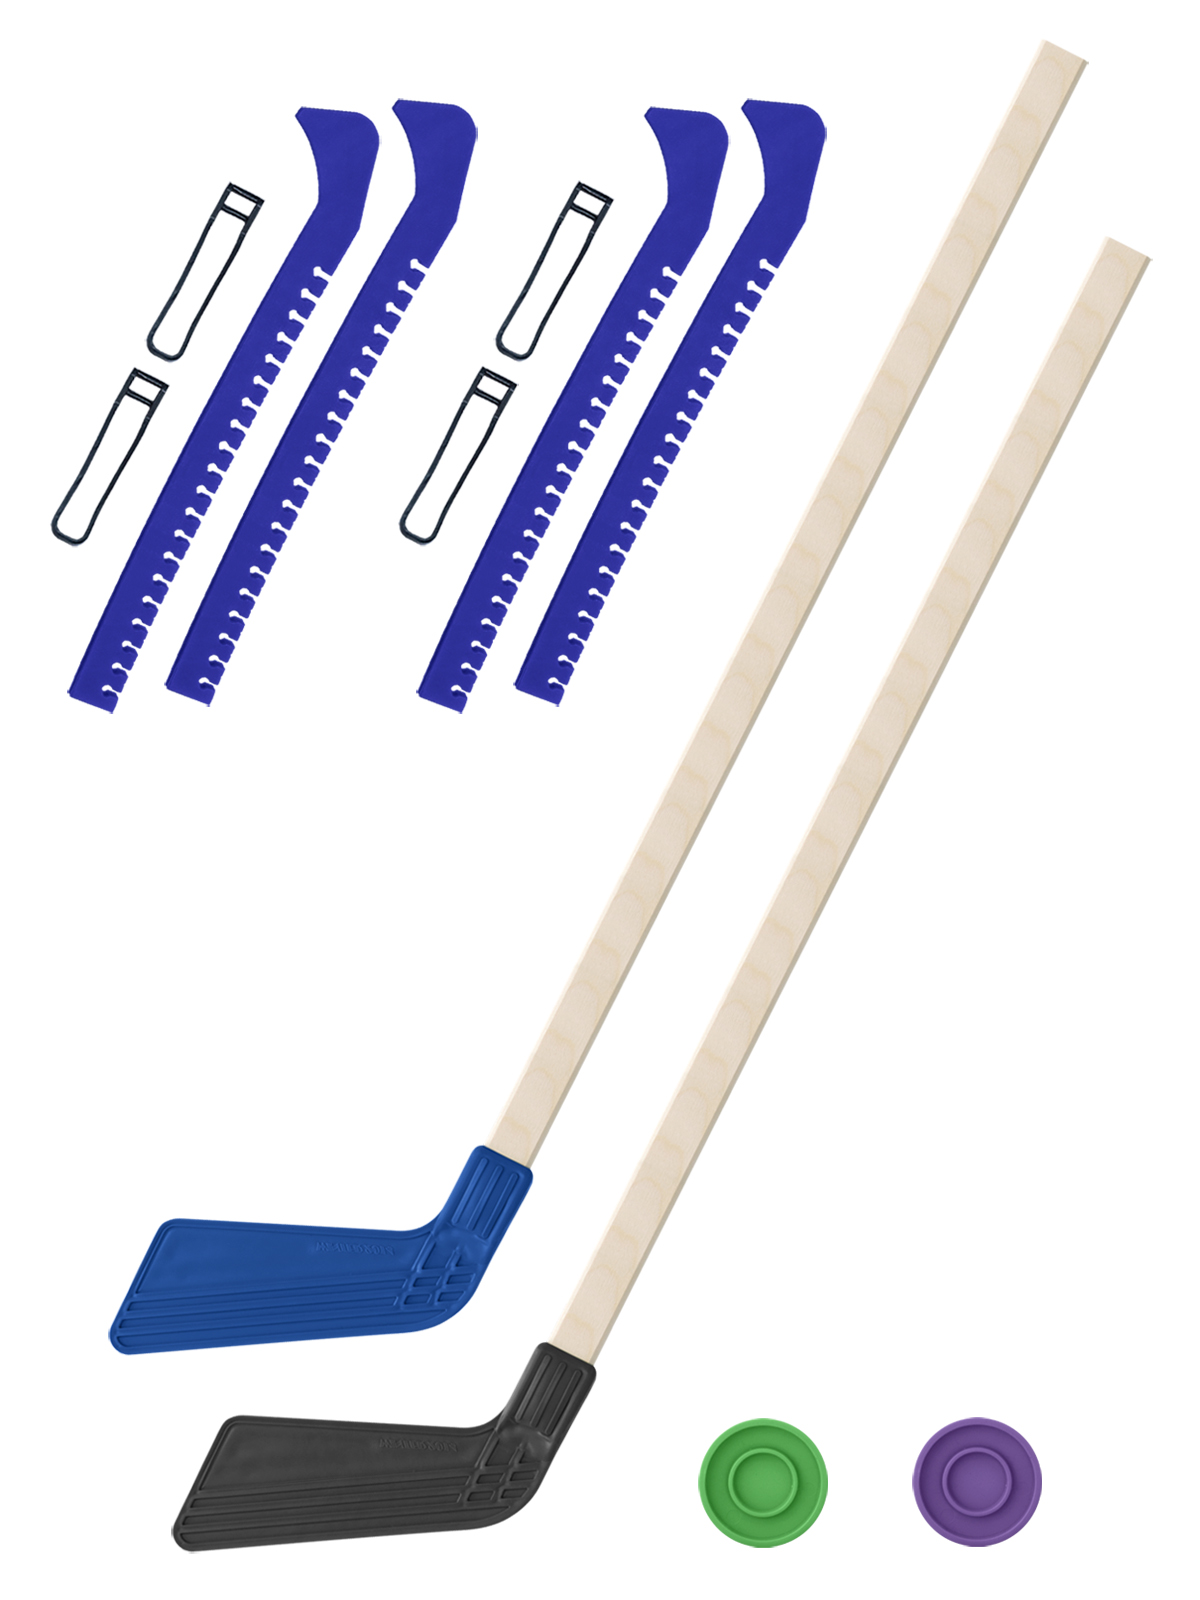 фото Хоккейный набор задира-плюс 2 клюшки син. и чер.80см+2 шайбы+чехлы для коньков син 2шт